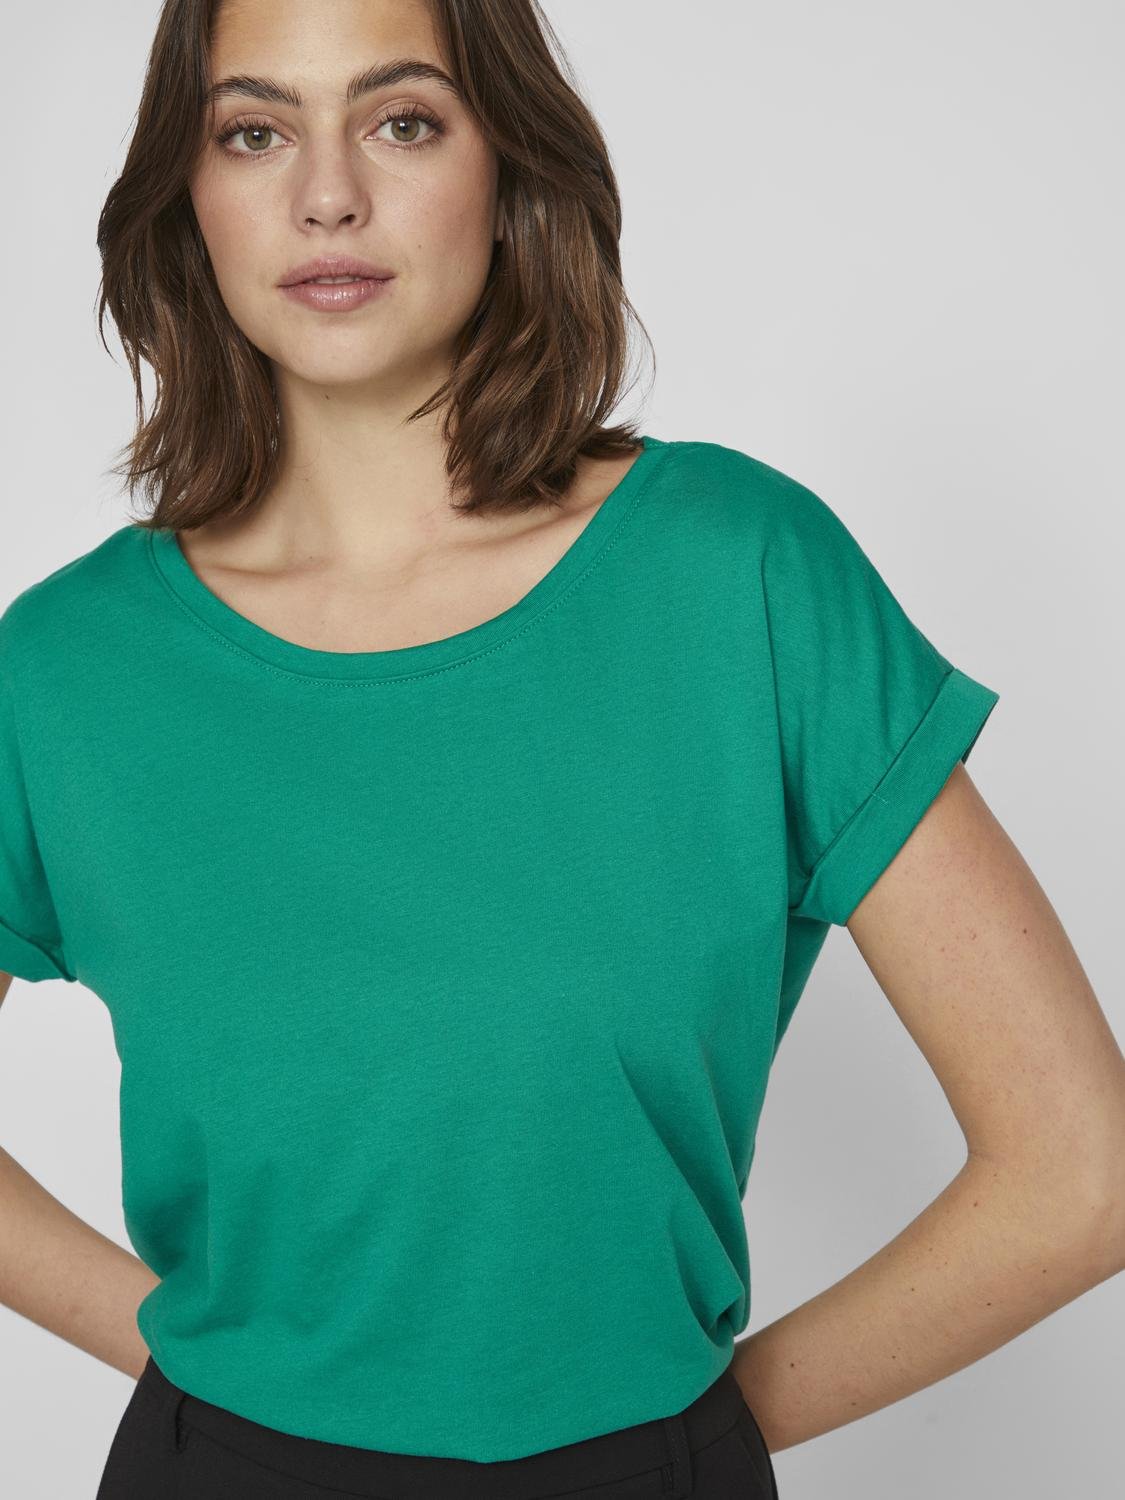 VIDREAMERS T-Shirt - Ultramarine Green